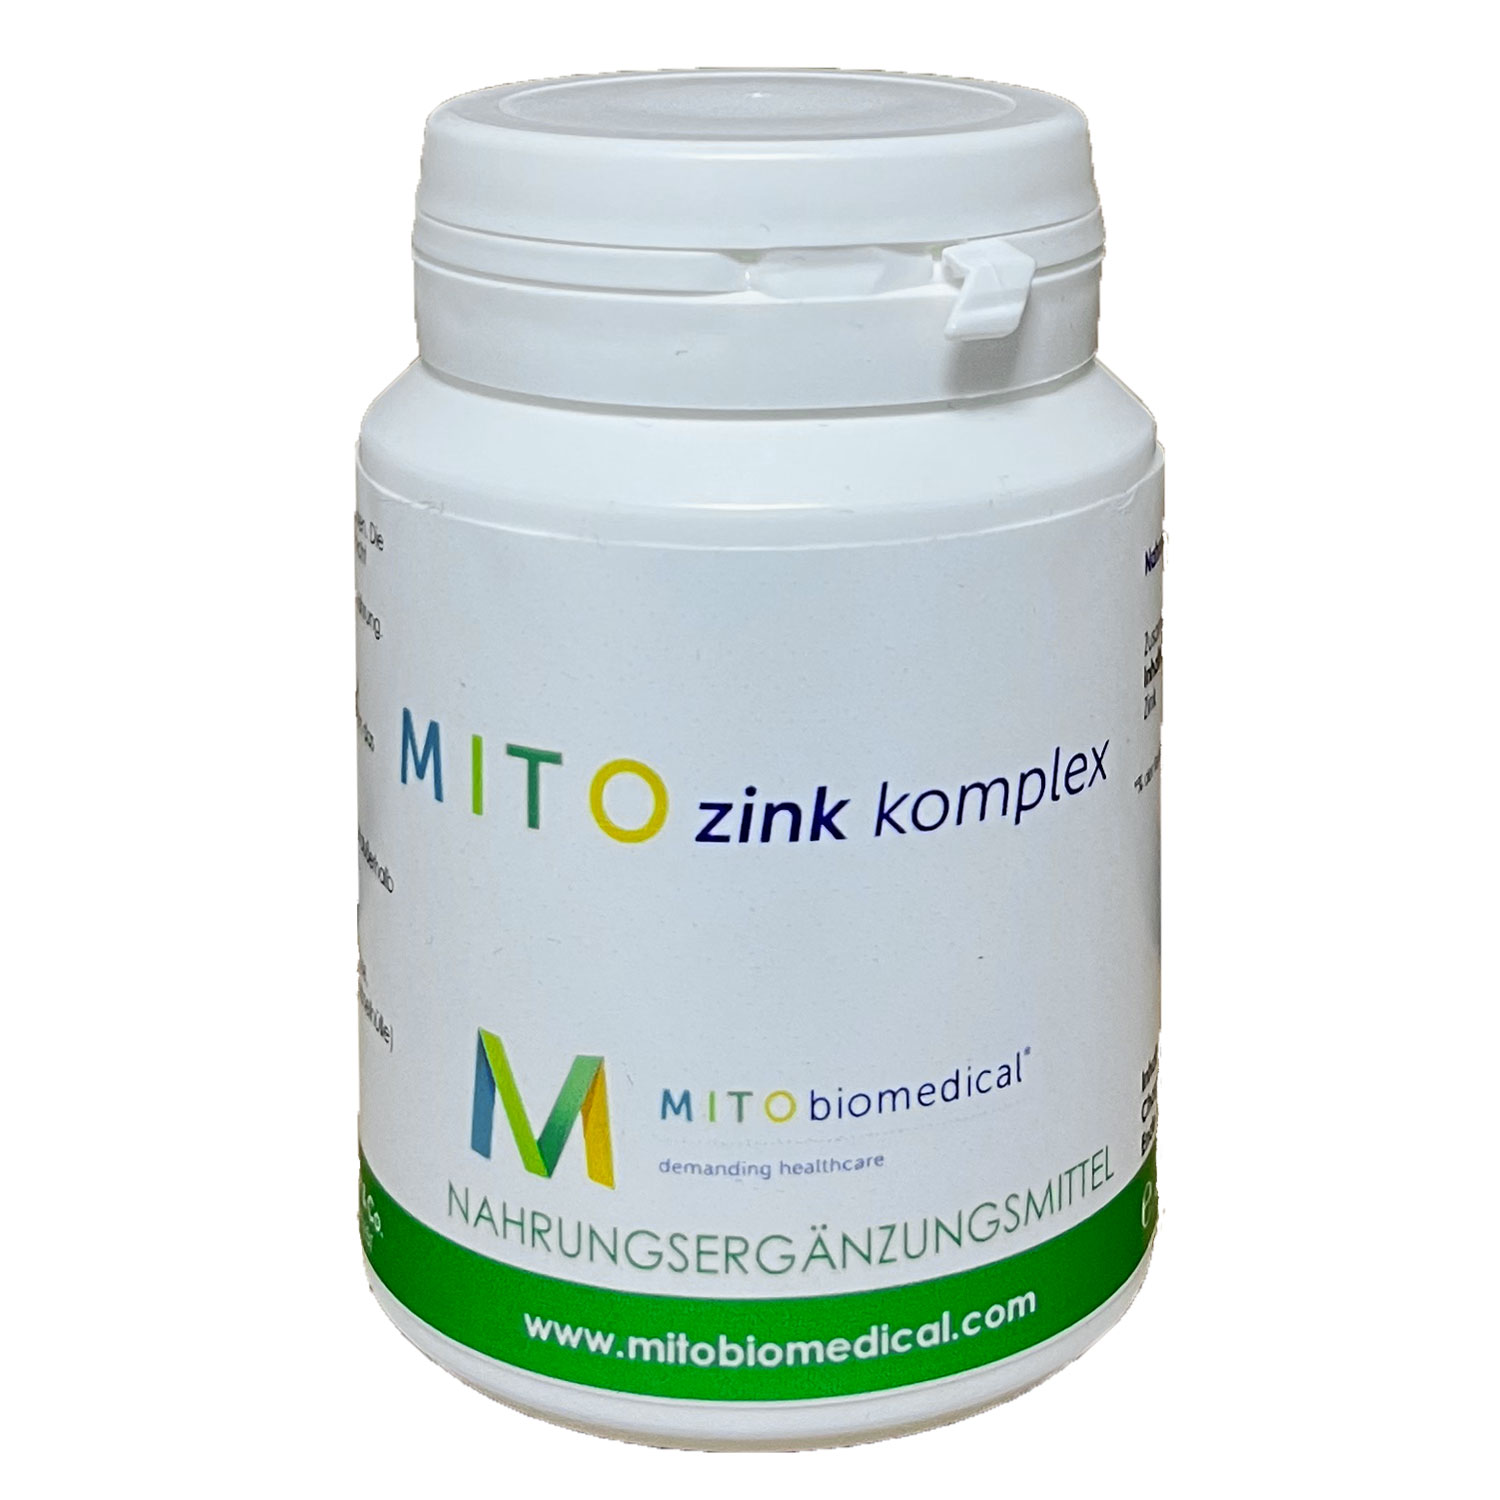 MITOZink von Mitobiomedical - 30g